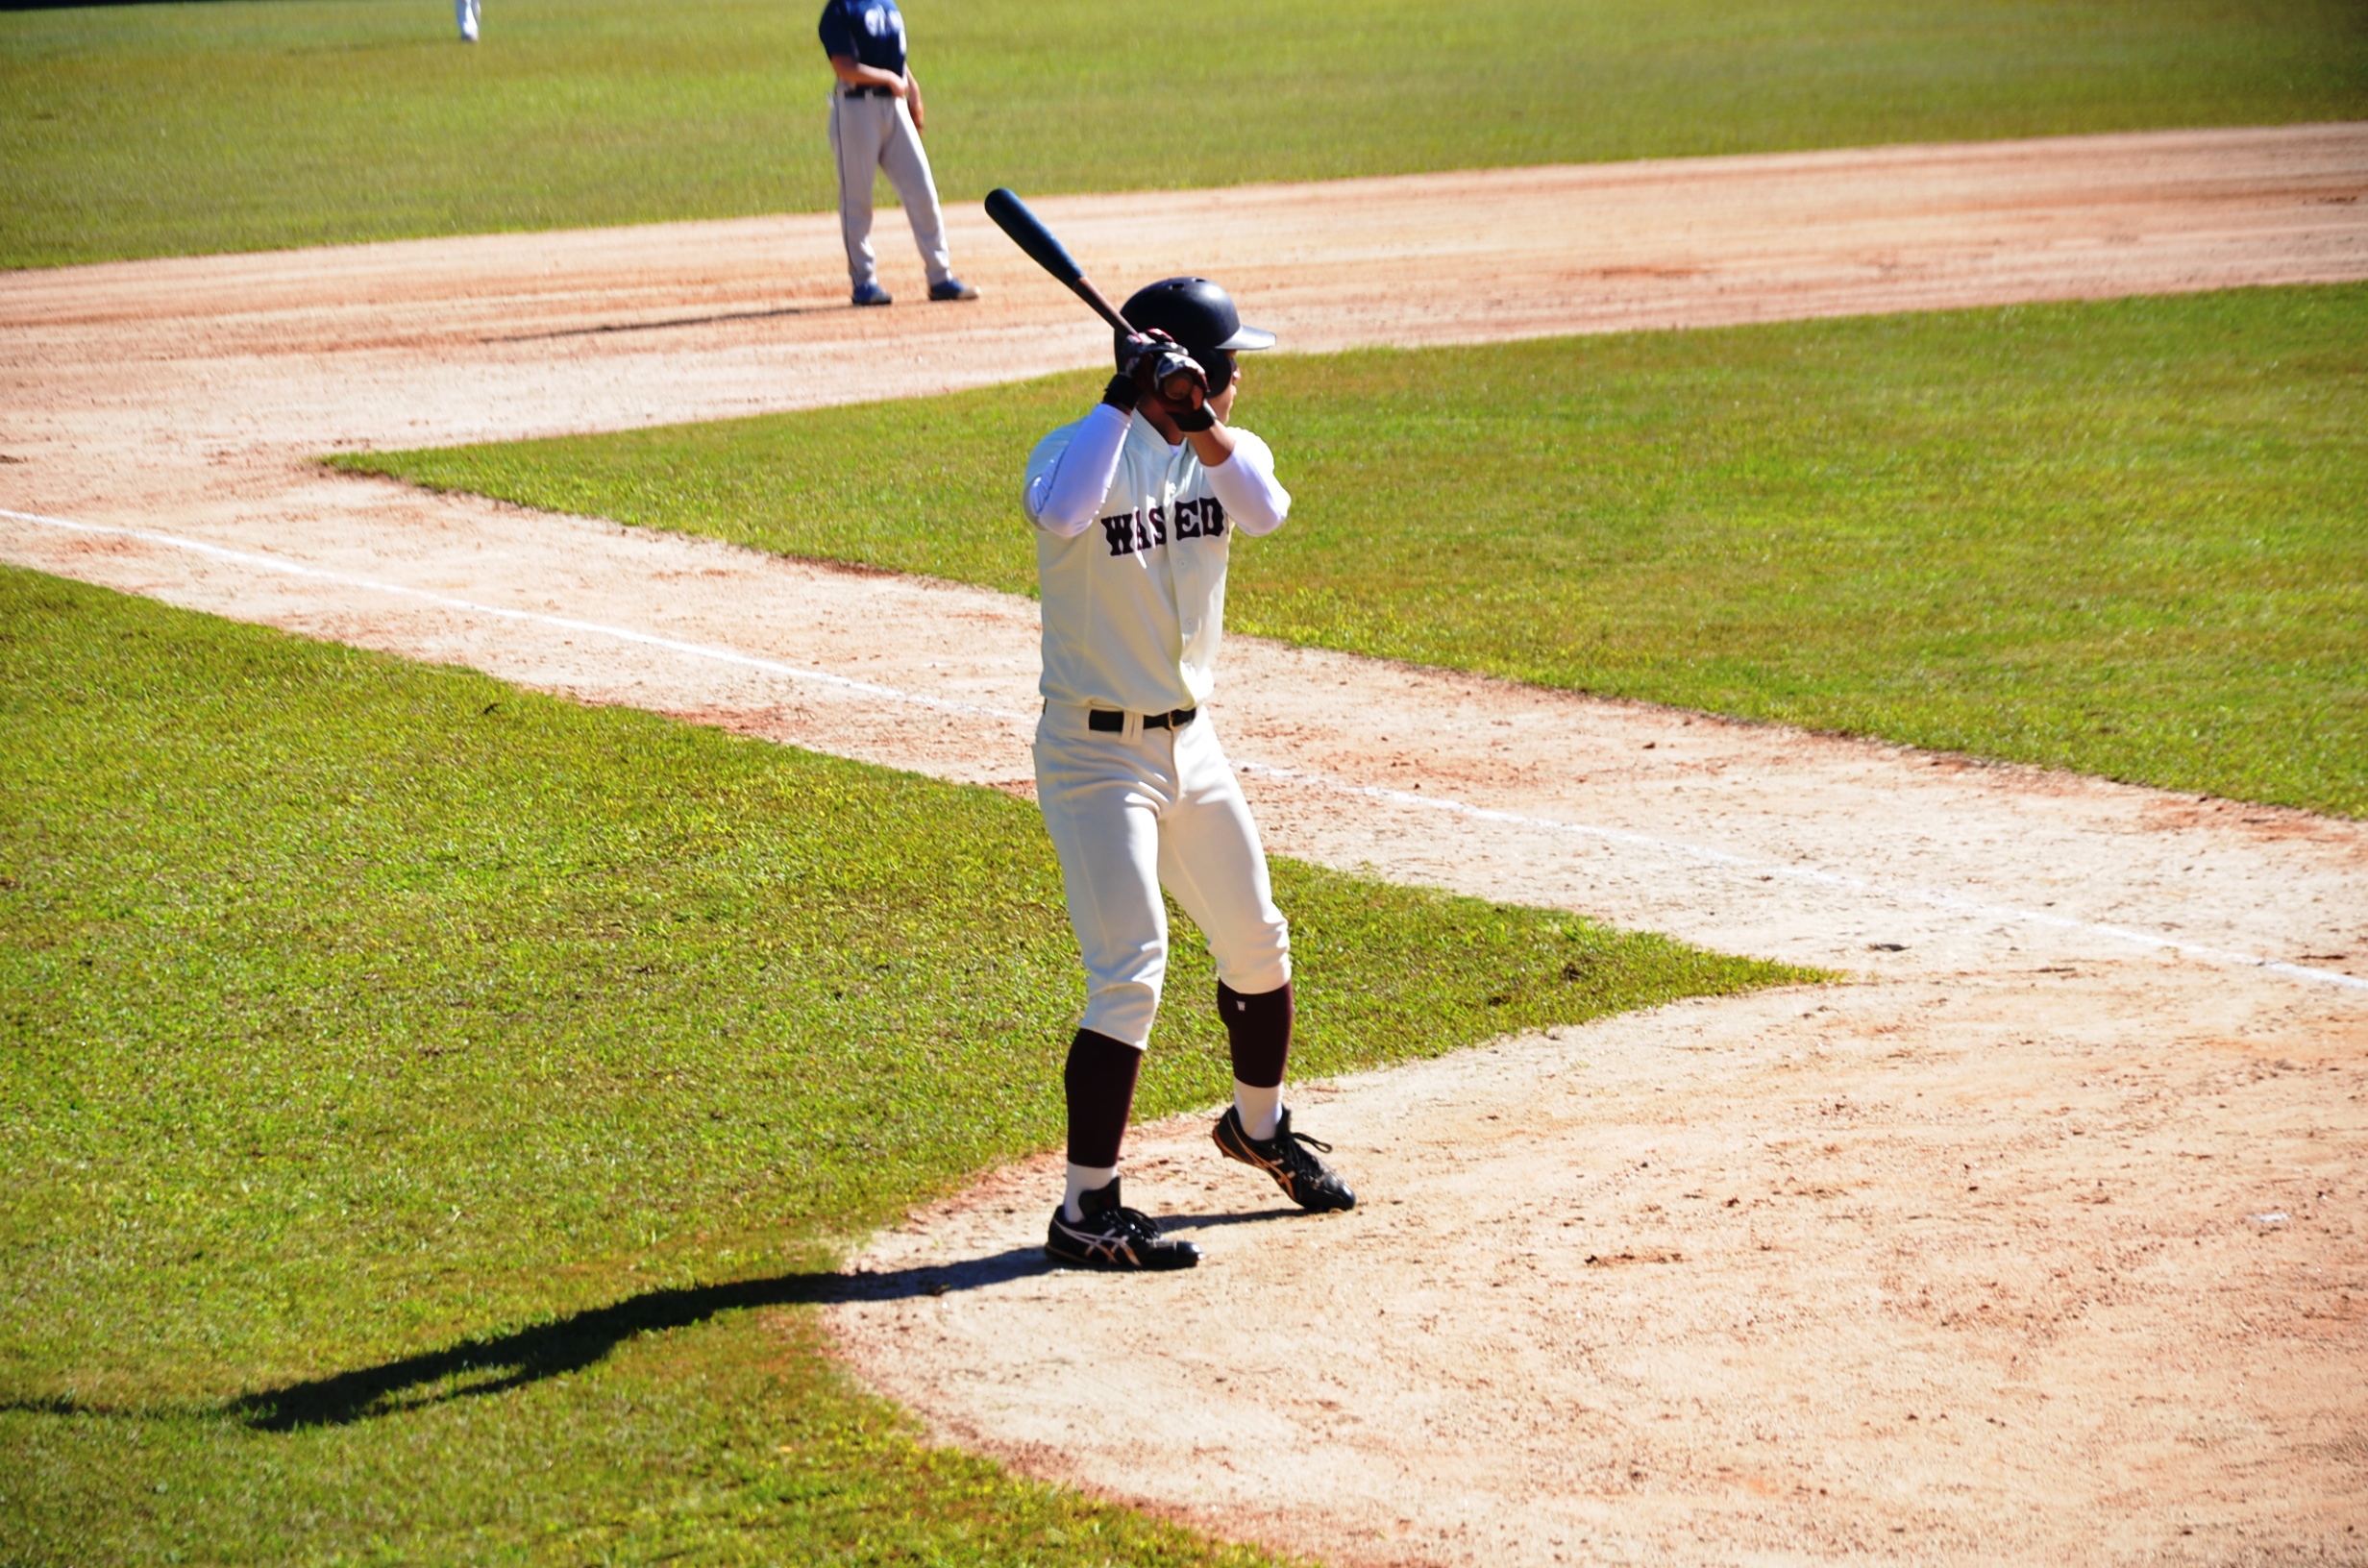 Na imagem um jogador de beisebol com equipamento e taco nas mãos pronto para rebater a bola, em um campo deste esporte, em um dia ensolarado.